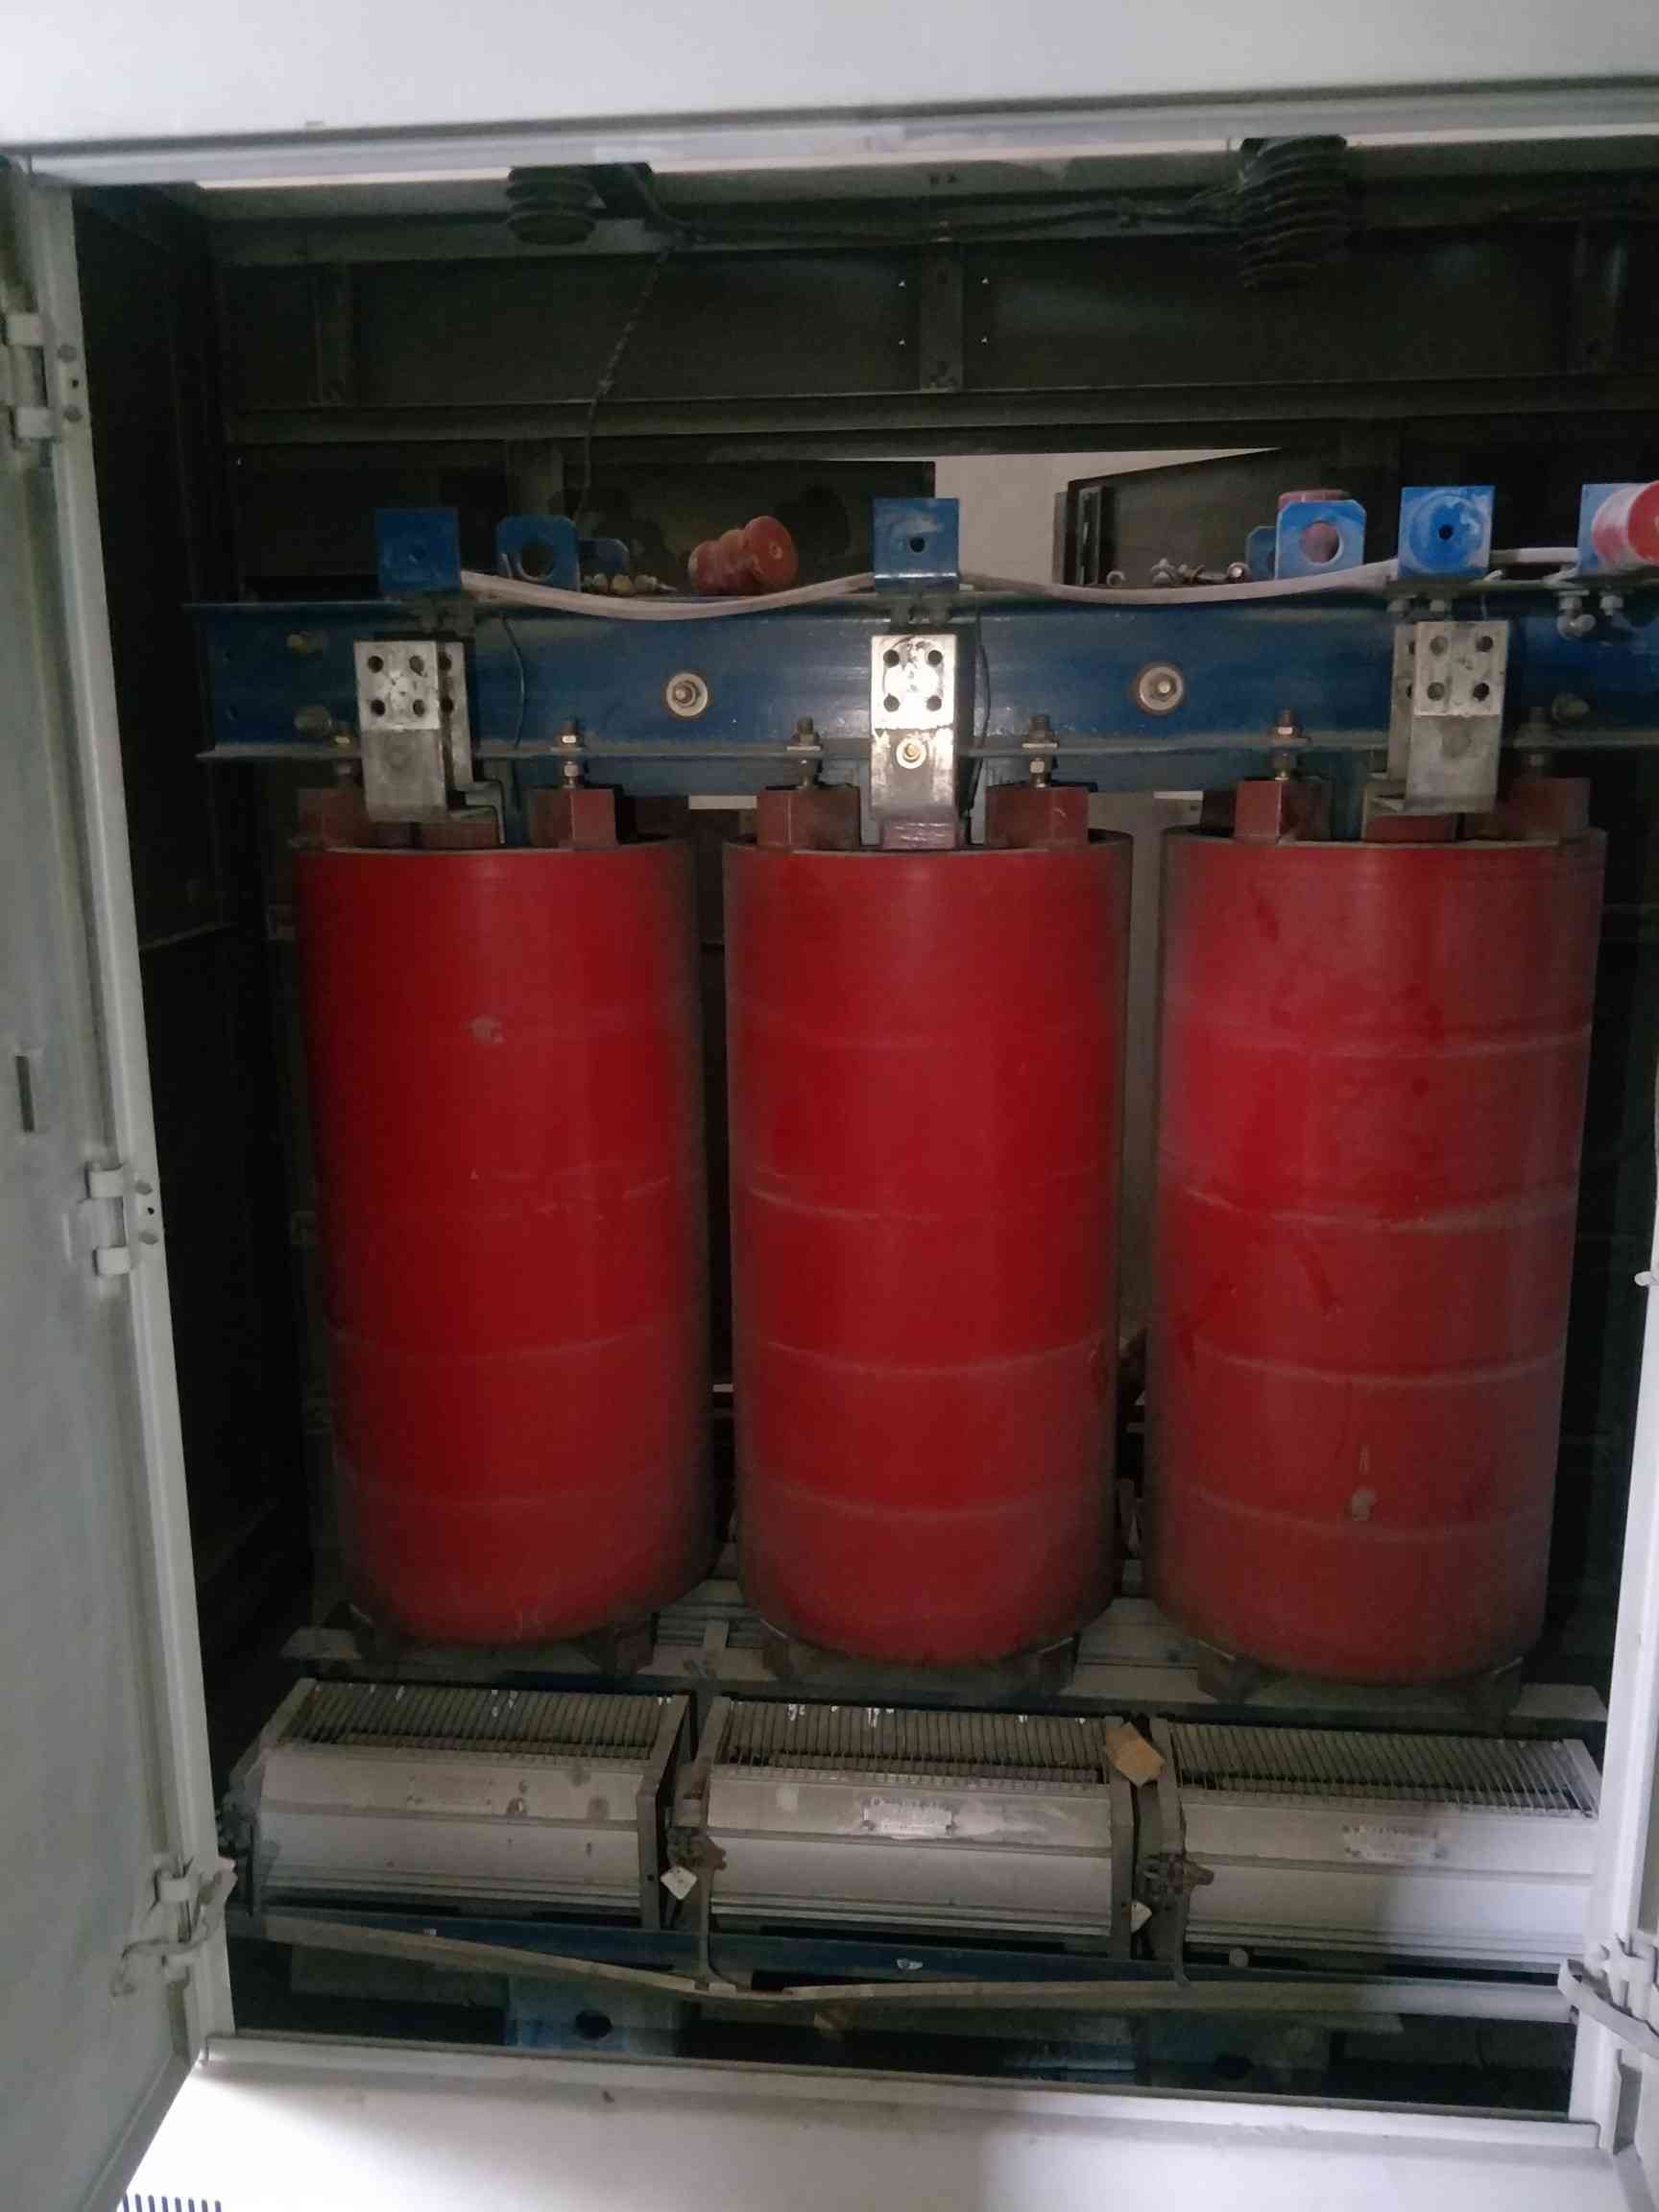 预装式变电站回收-广州二手变压器回收公司